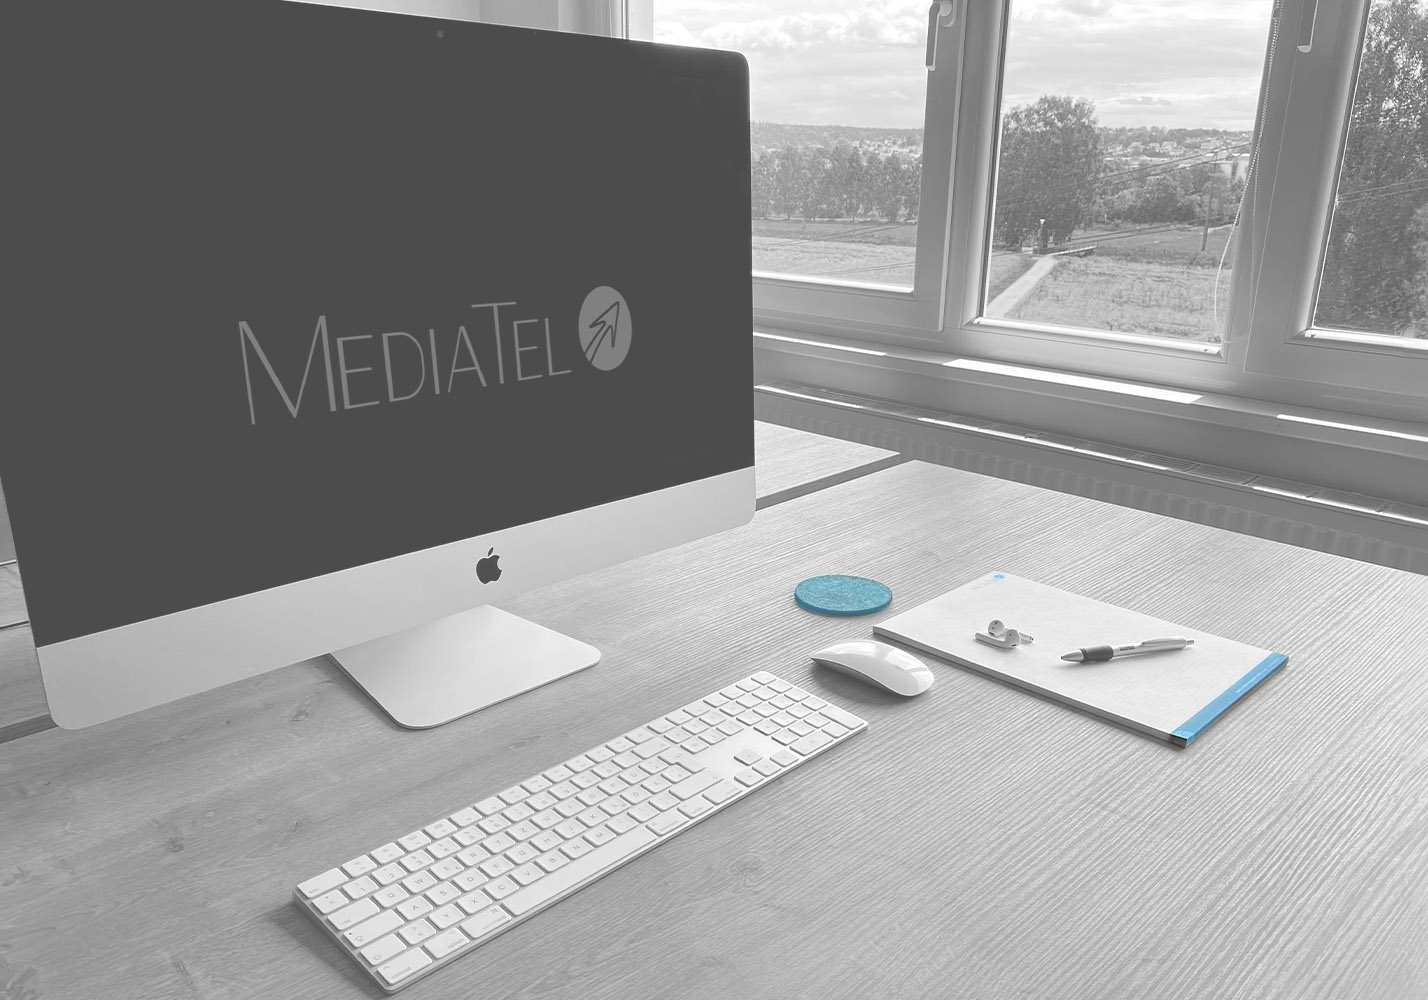 MediaTel-Header-Image_edit-grey_Logo